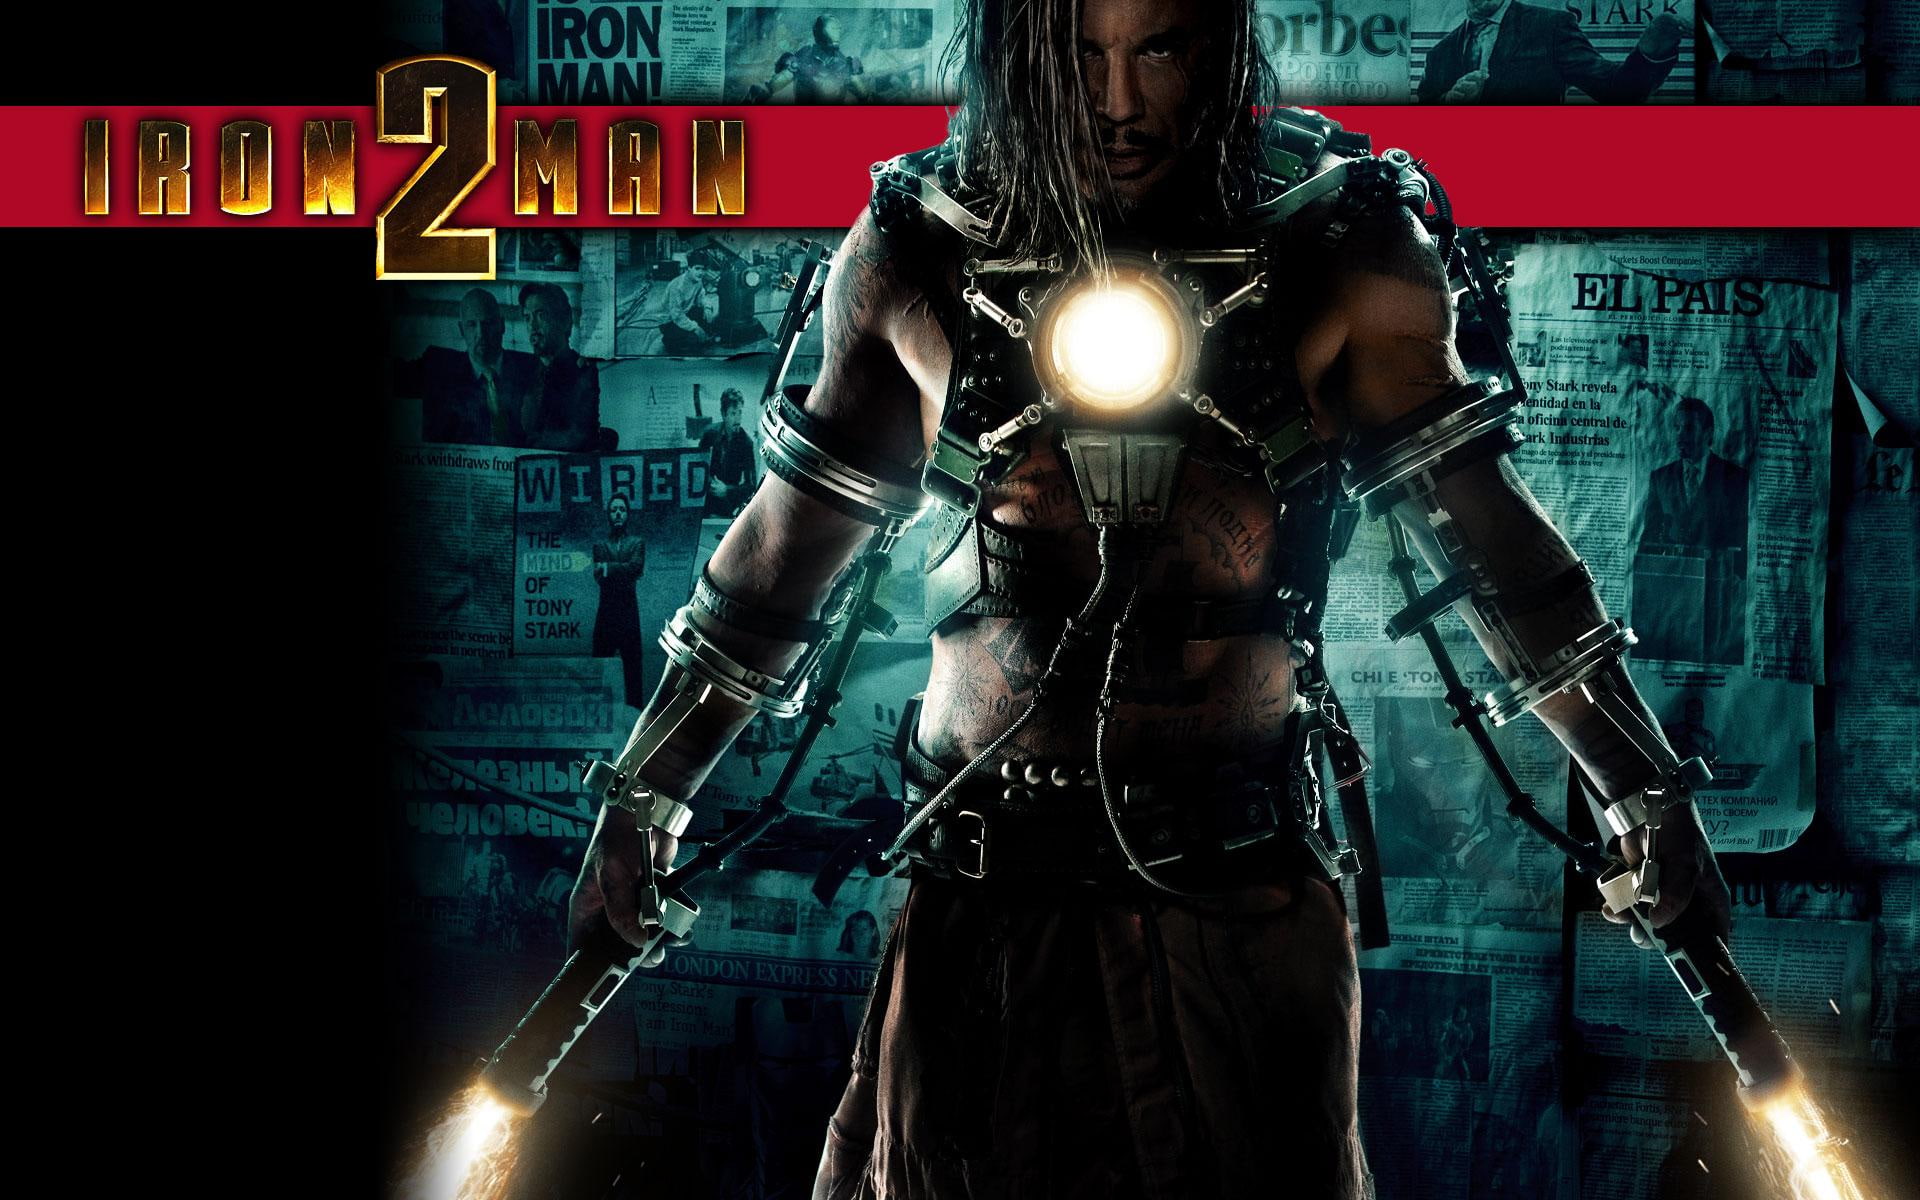 Iron Man 2 Whiplash Poster - HD Wallpaper 